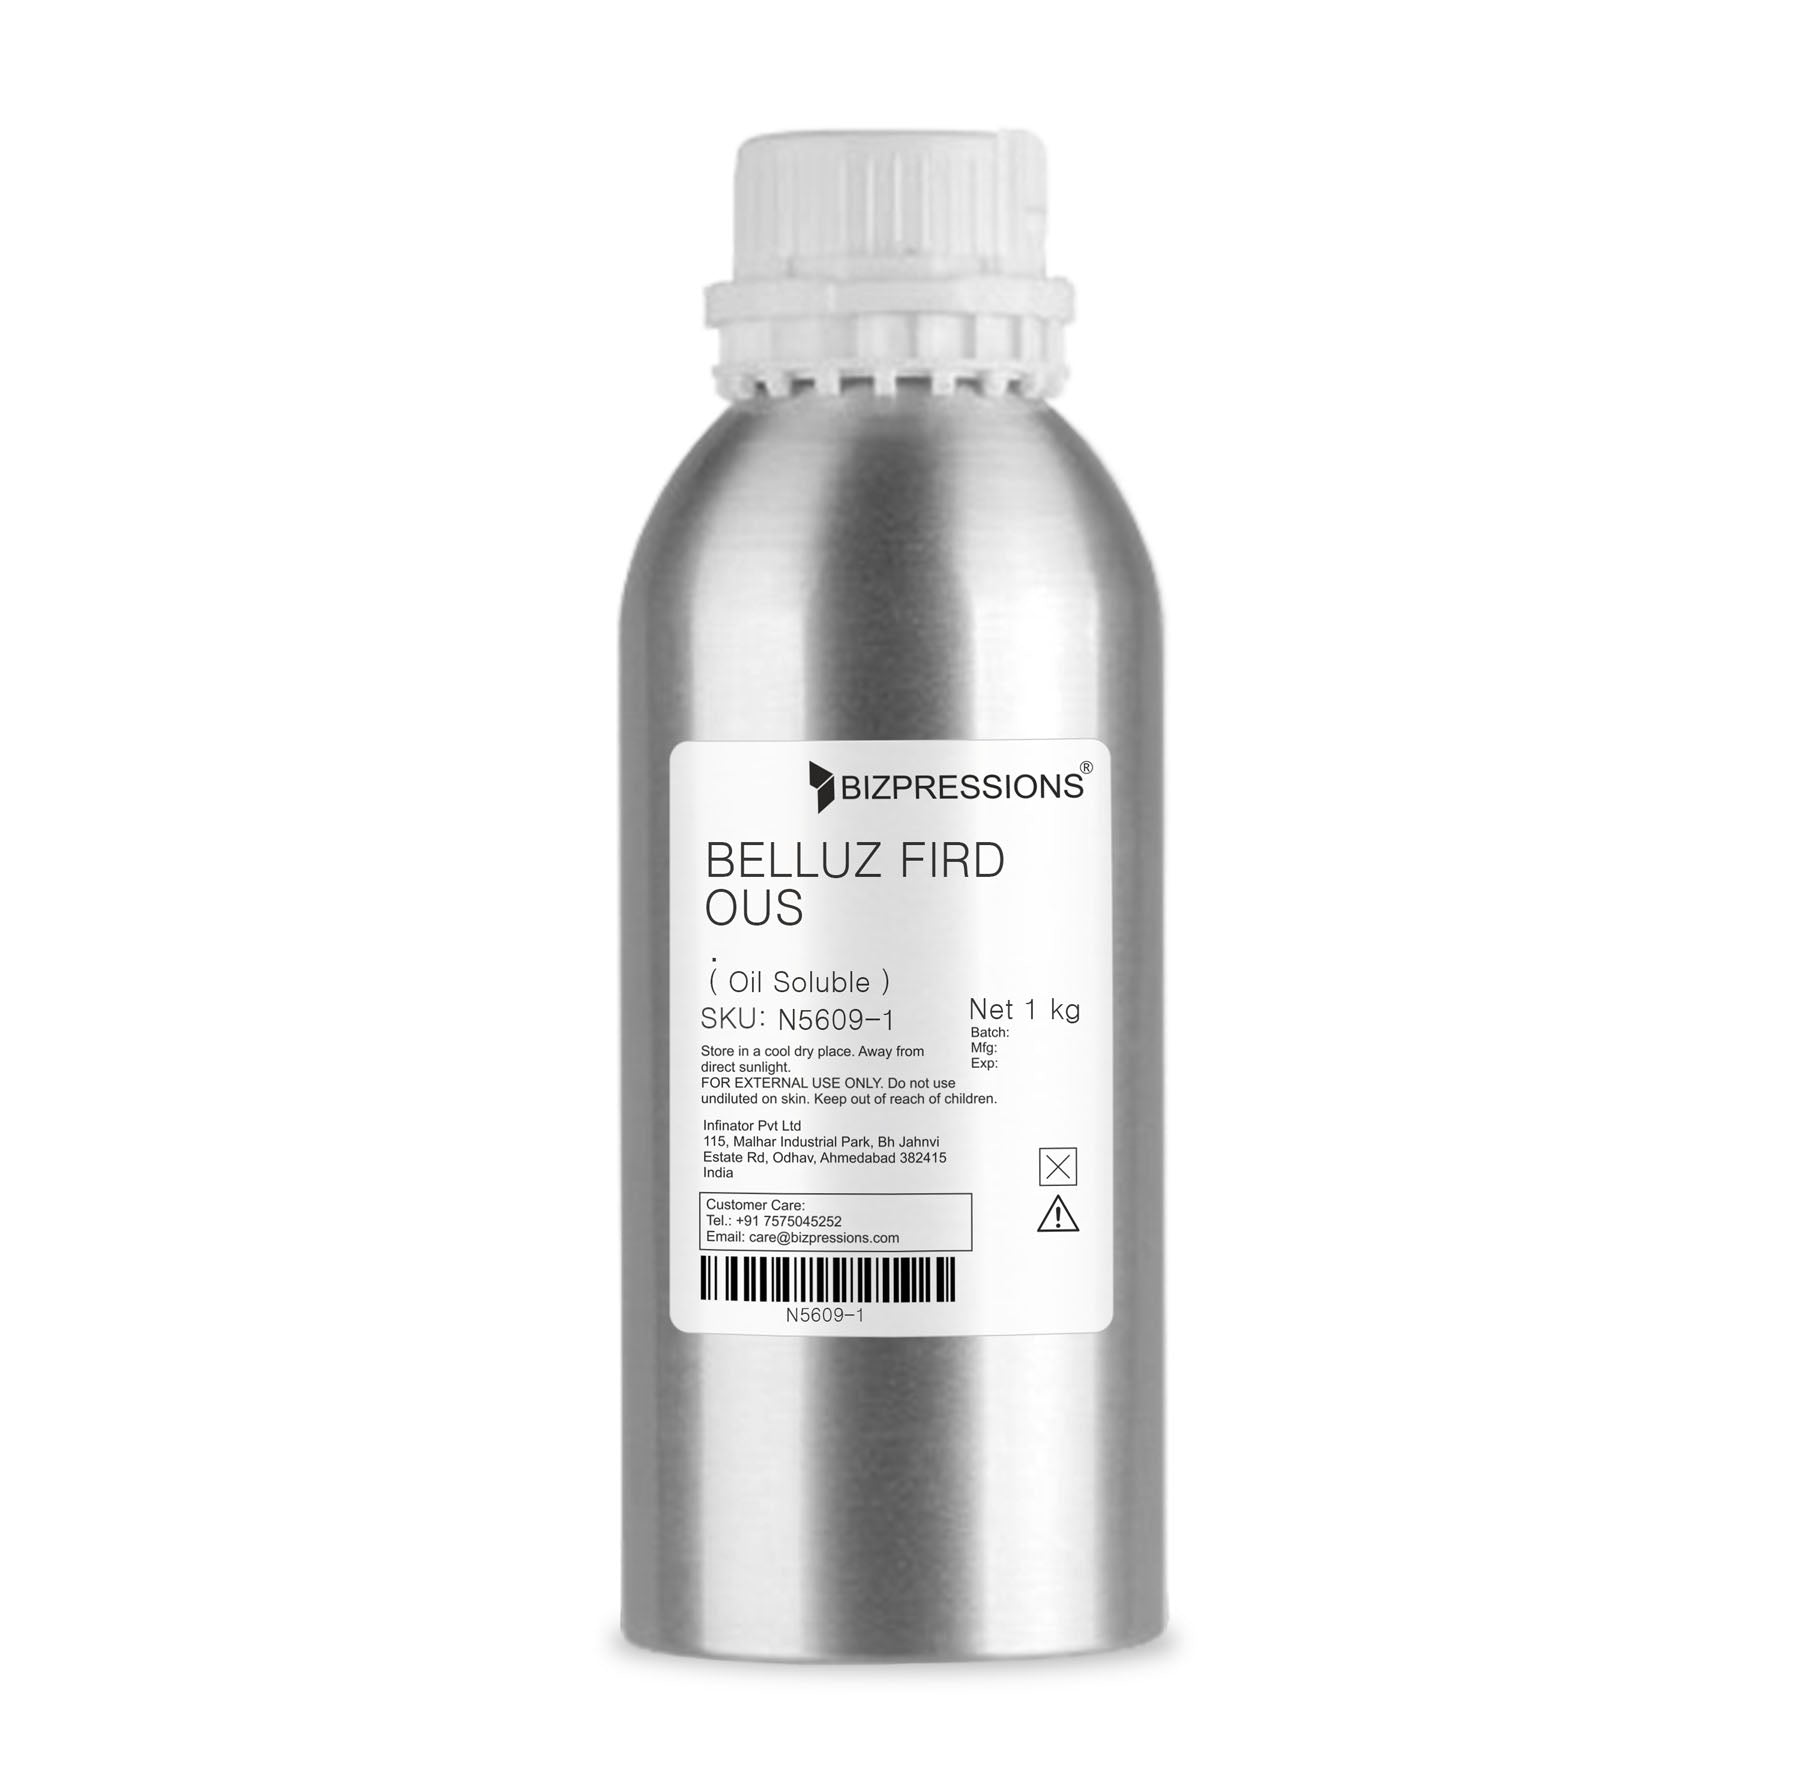 BELLUZ FIRDOUS - Fragrance ( Oil Soluble ) - 1 kg